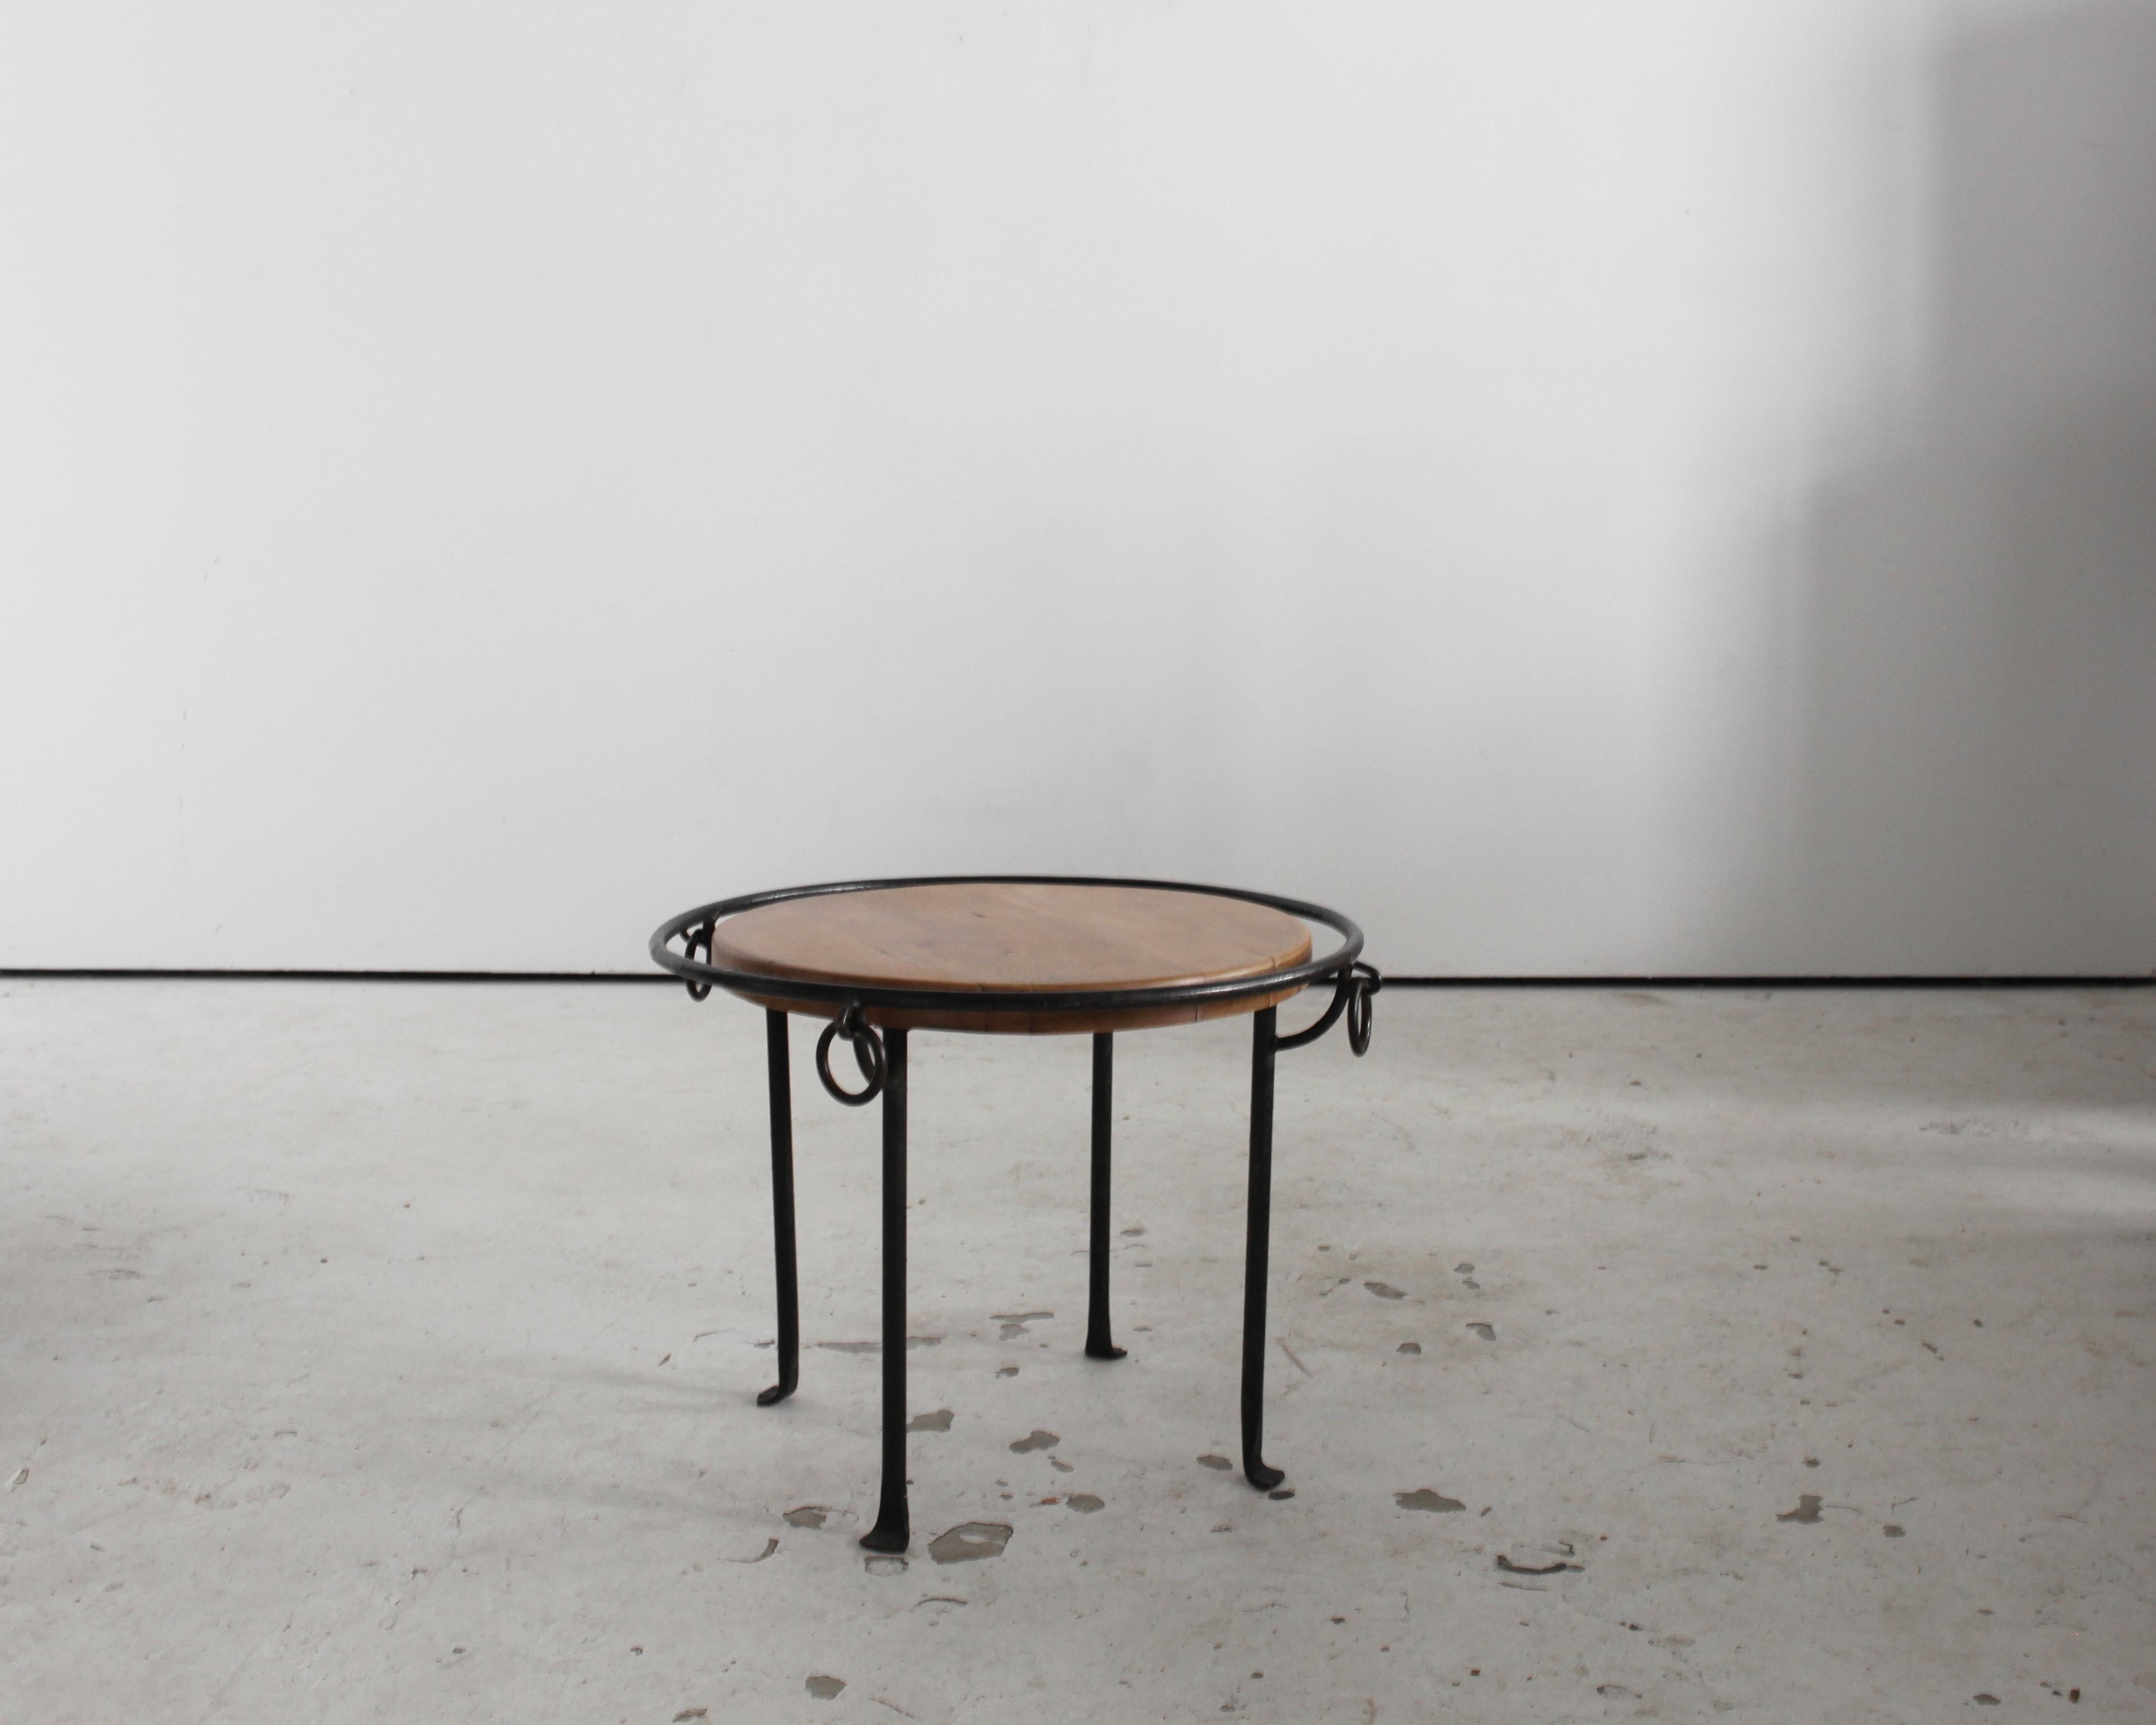 Table basse circulaire moderniste française des années 1950, avec structure en fer forgé et plateau en chêne décapé.
